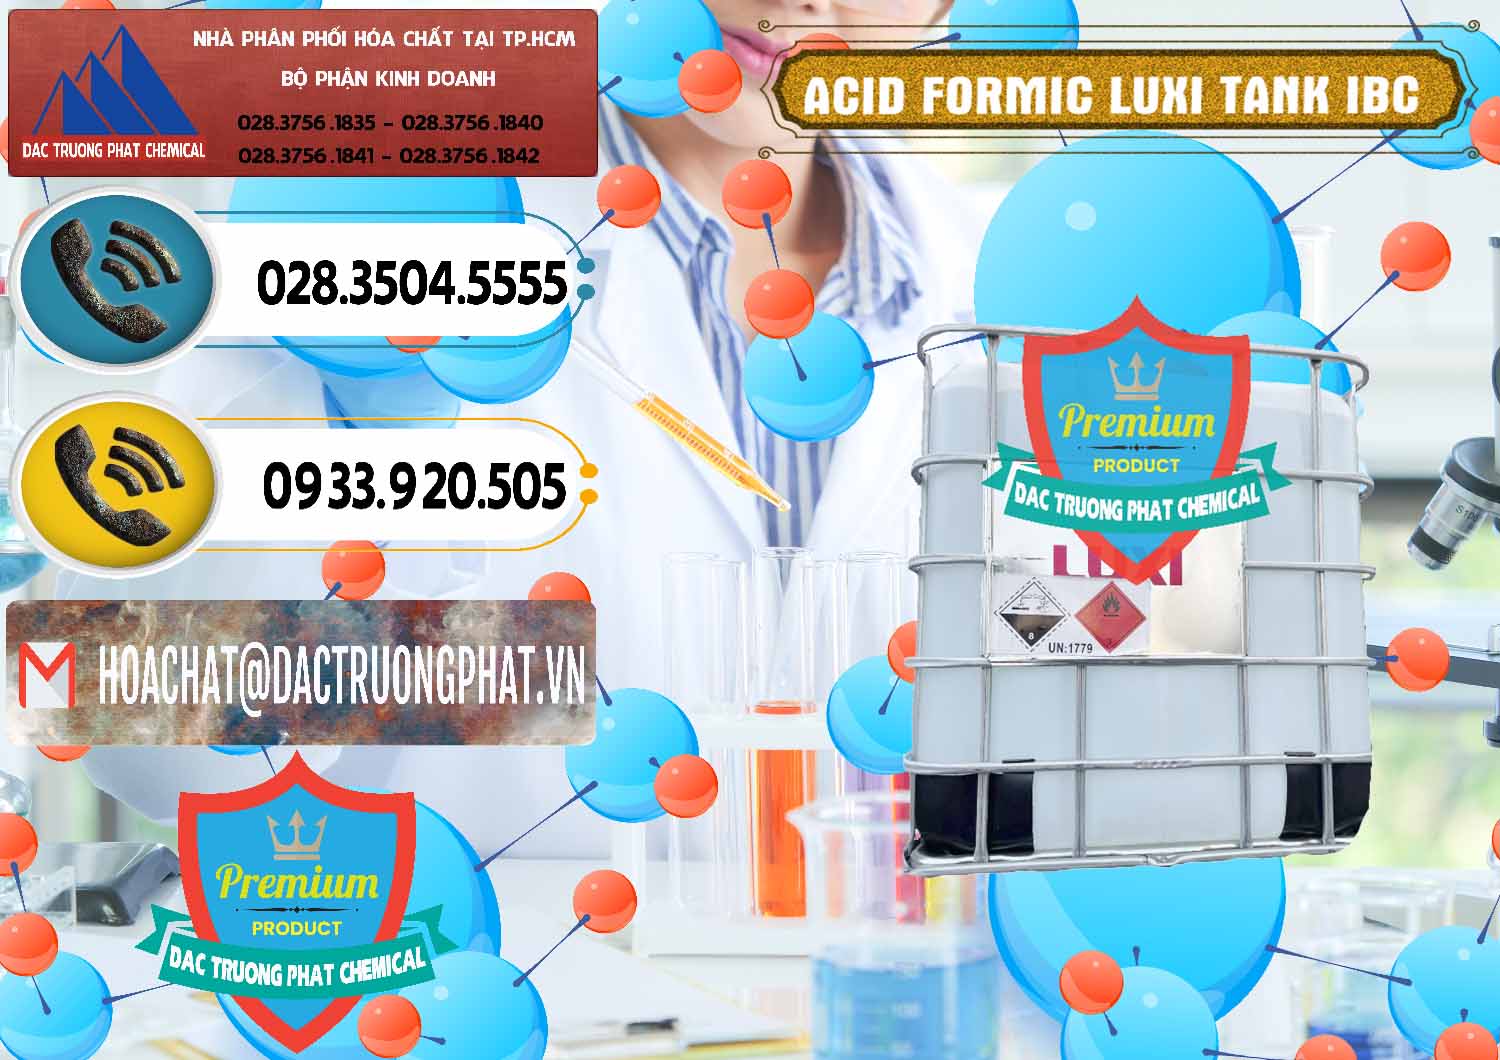 Nơi cung ứng & bán Acid Formic - Acid Formic Tank - Bồn IBC Luxi Trung Quốc China - 0400 - Công ty nhập khẩu ( cung cấp ) hóa chất tại TP.HCM - hoachatdetnhuom.vn